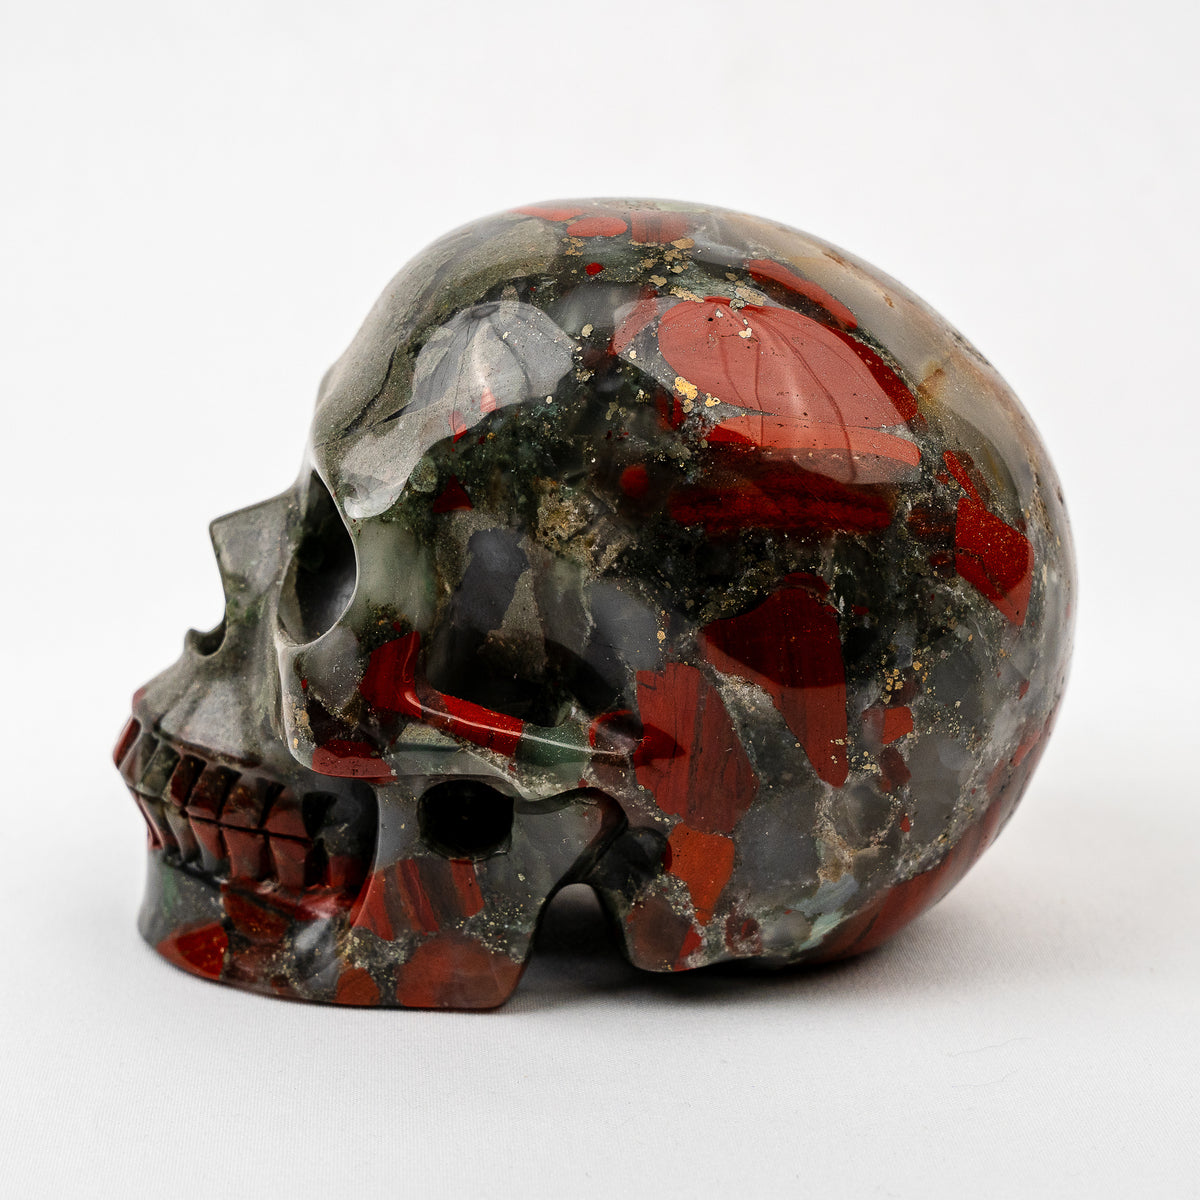 Bloodstone 5" Large Crystal Skull